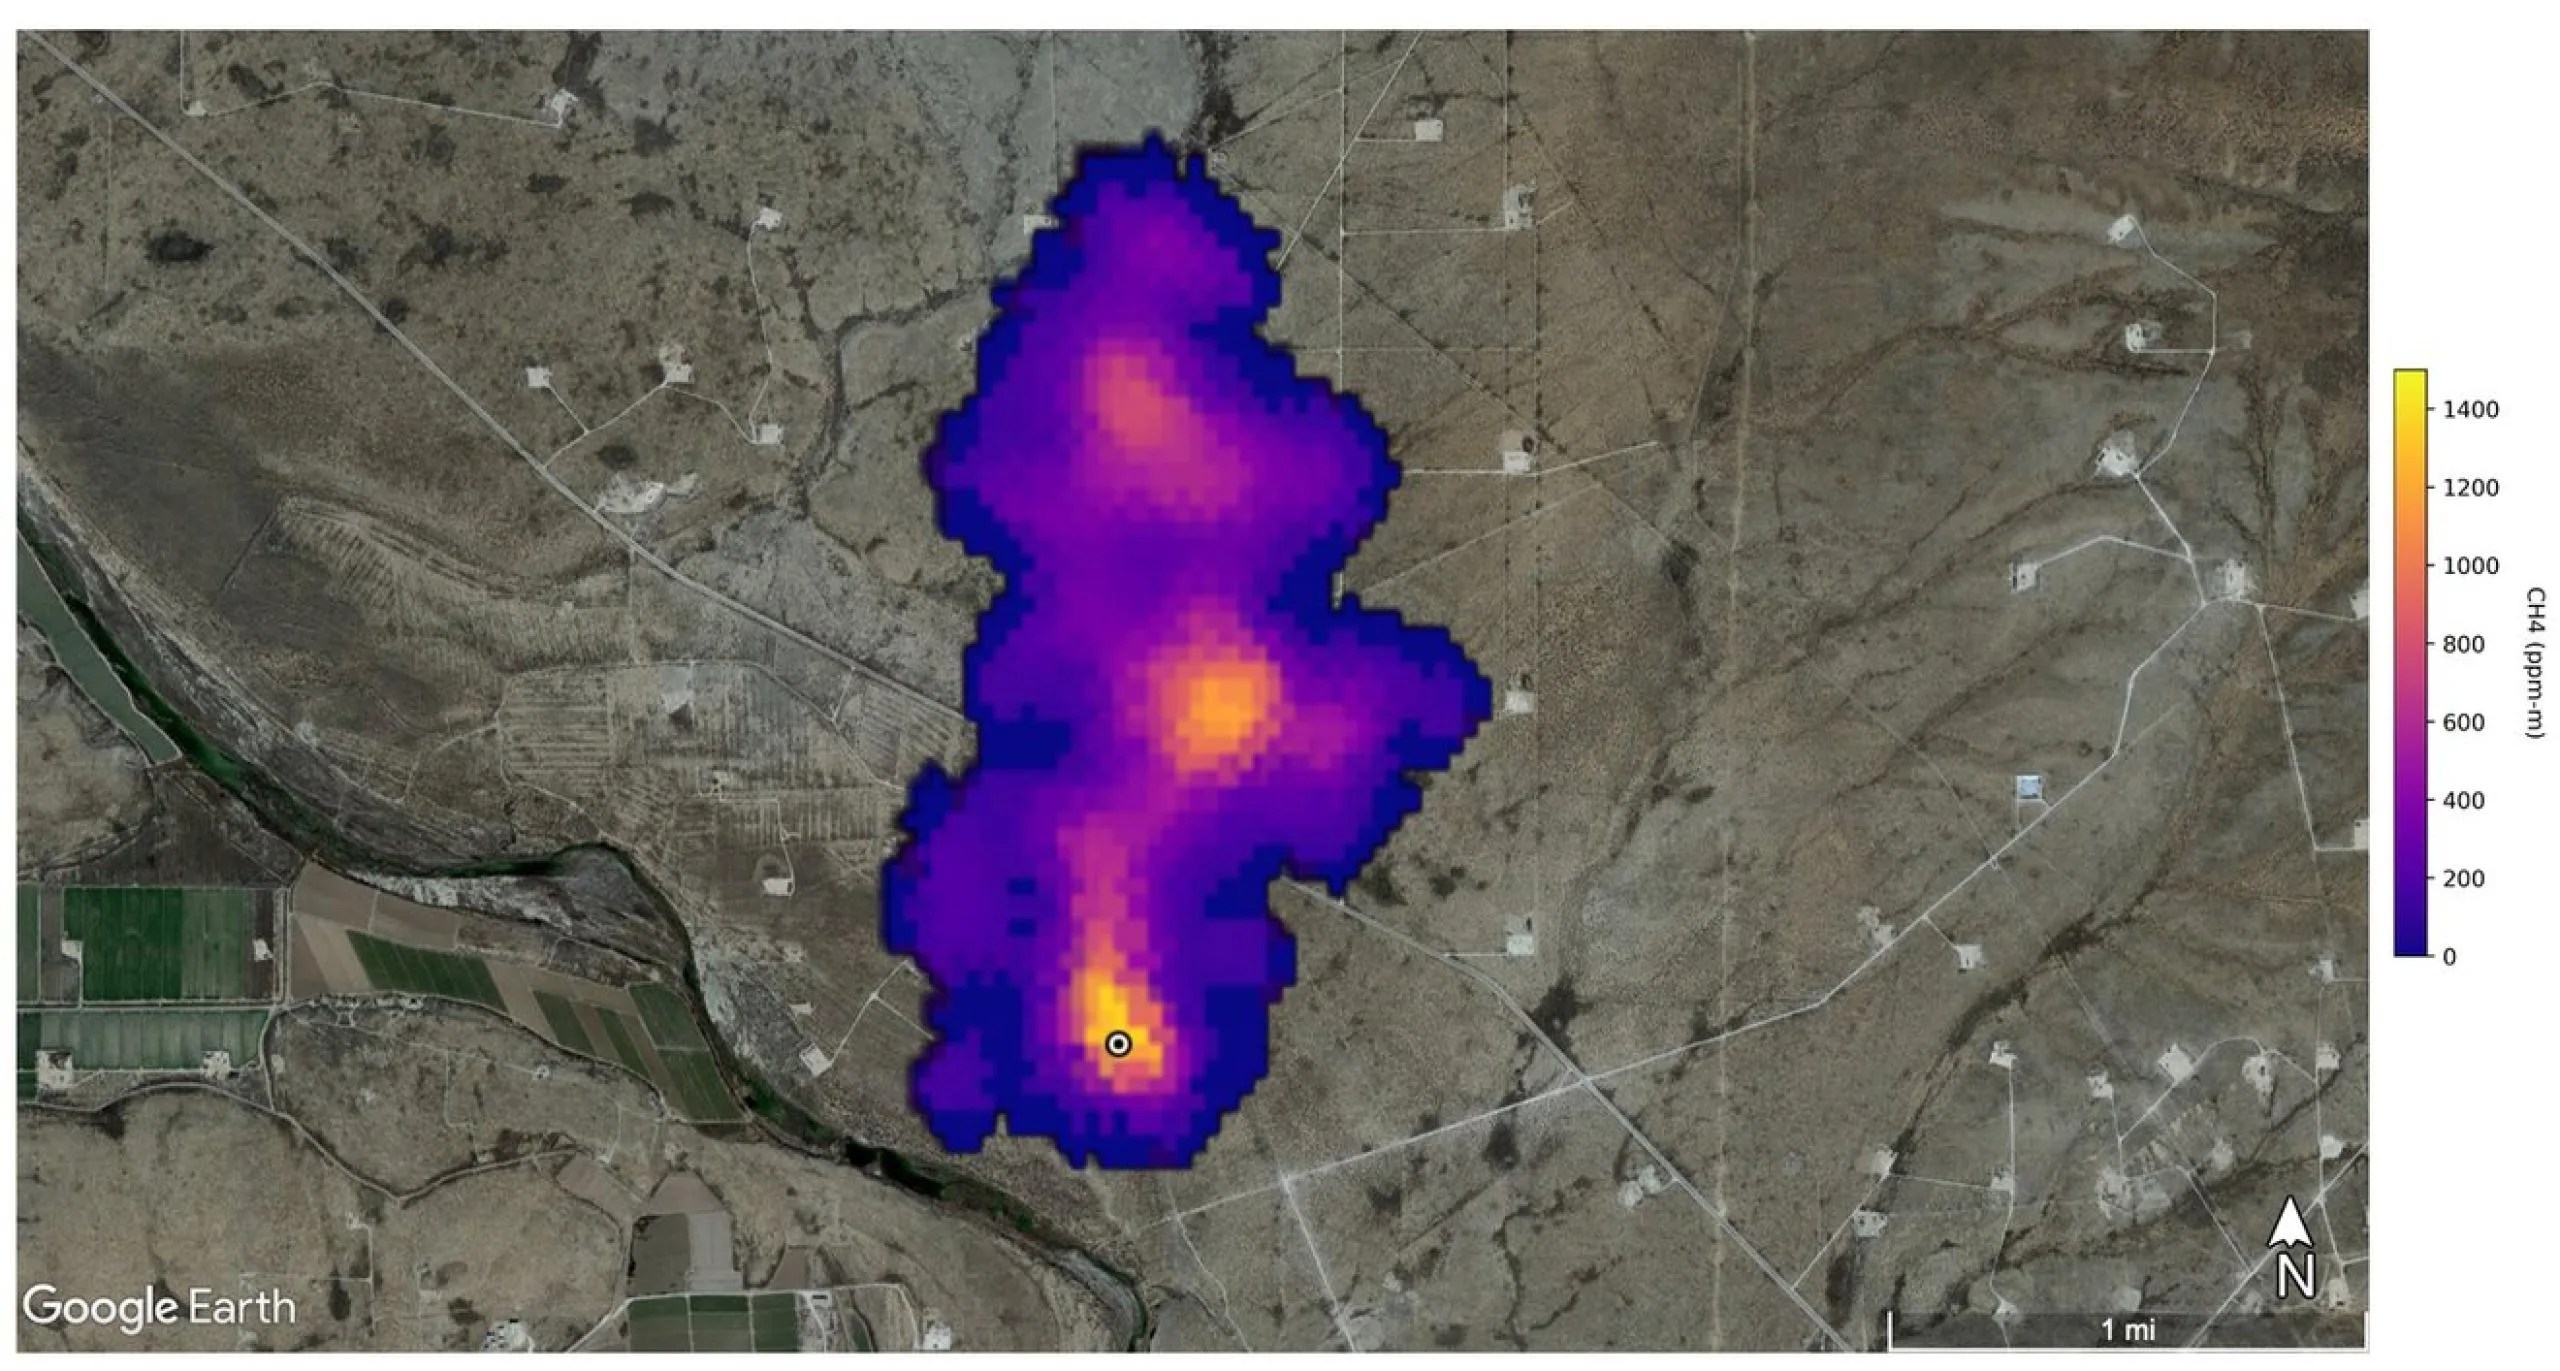 Esta imagen muestra un penacho de metano de 3 kilómetros (2 millas) de longitud detectado por la misión de Investigación de las Fuentes de Polvo Mineral en la Superficie de la Tierra de la NASA al sureste de Carlsbad, Nuevo México. El metano es un potente gas de efecto invernadero que es mucho más eficaz que el dióxido de carbono para atrapar el calor en la atmósfera. Crédito: NASA/JPL-Caltech